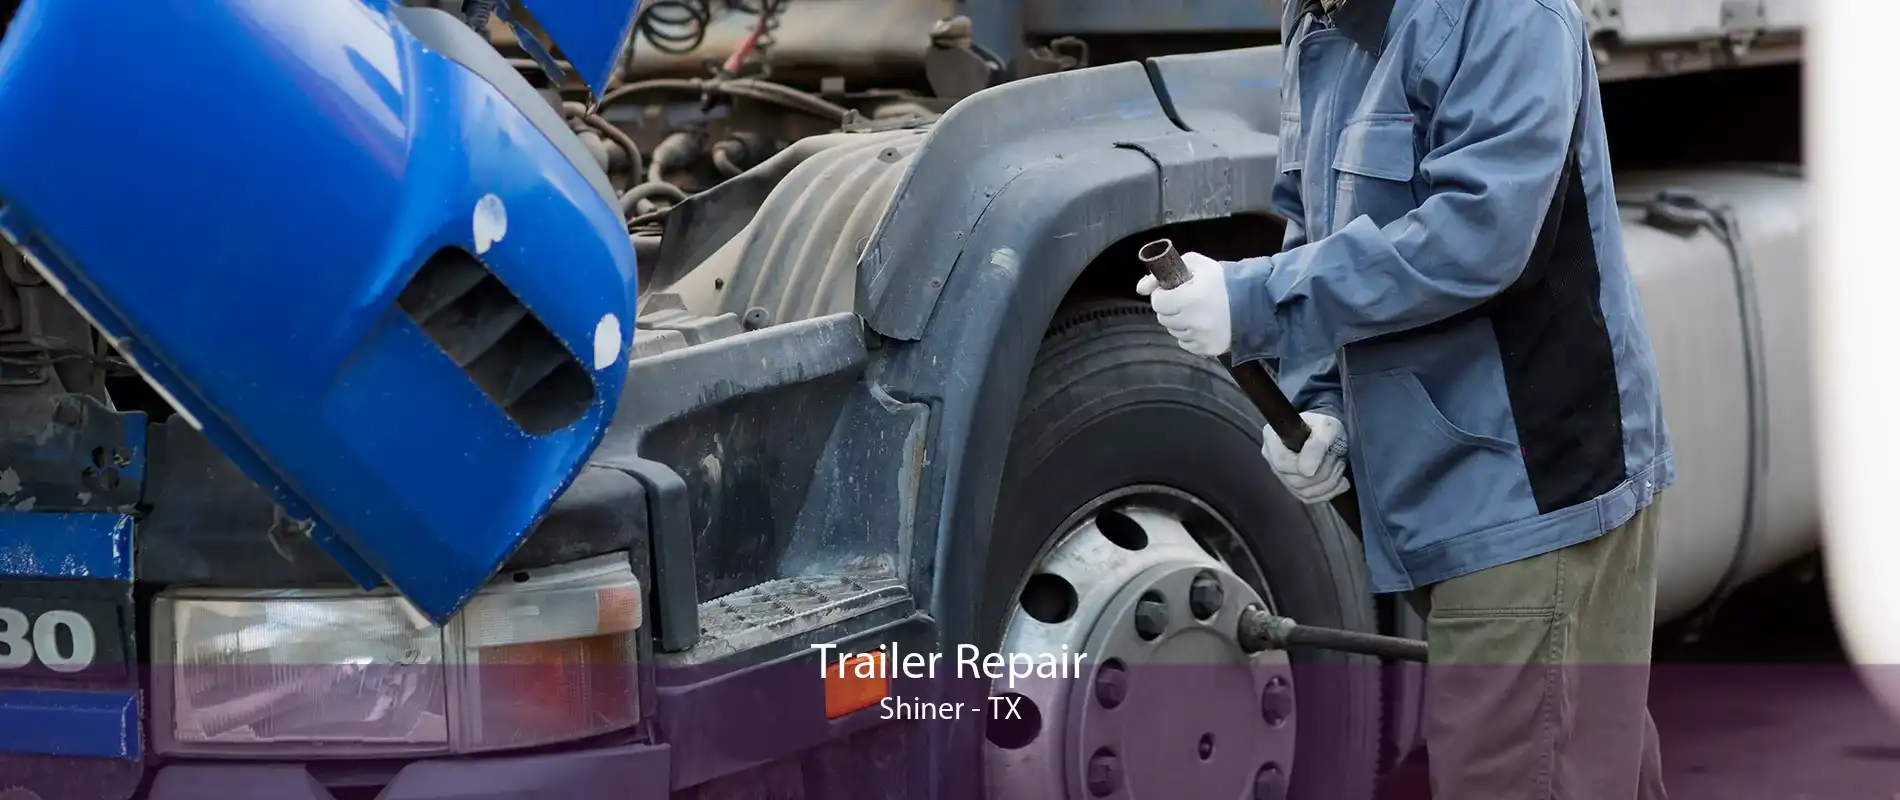 Trailer Repair Shiner - TX